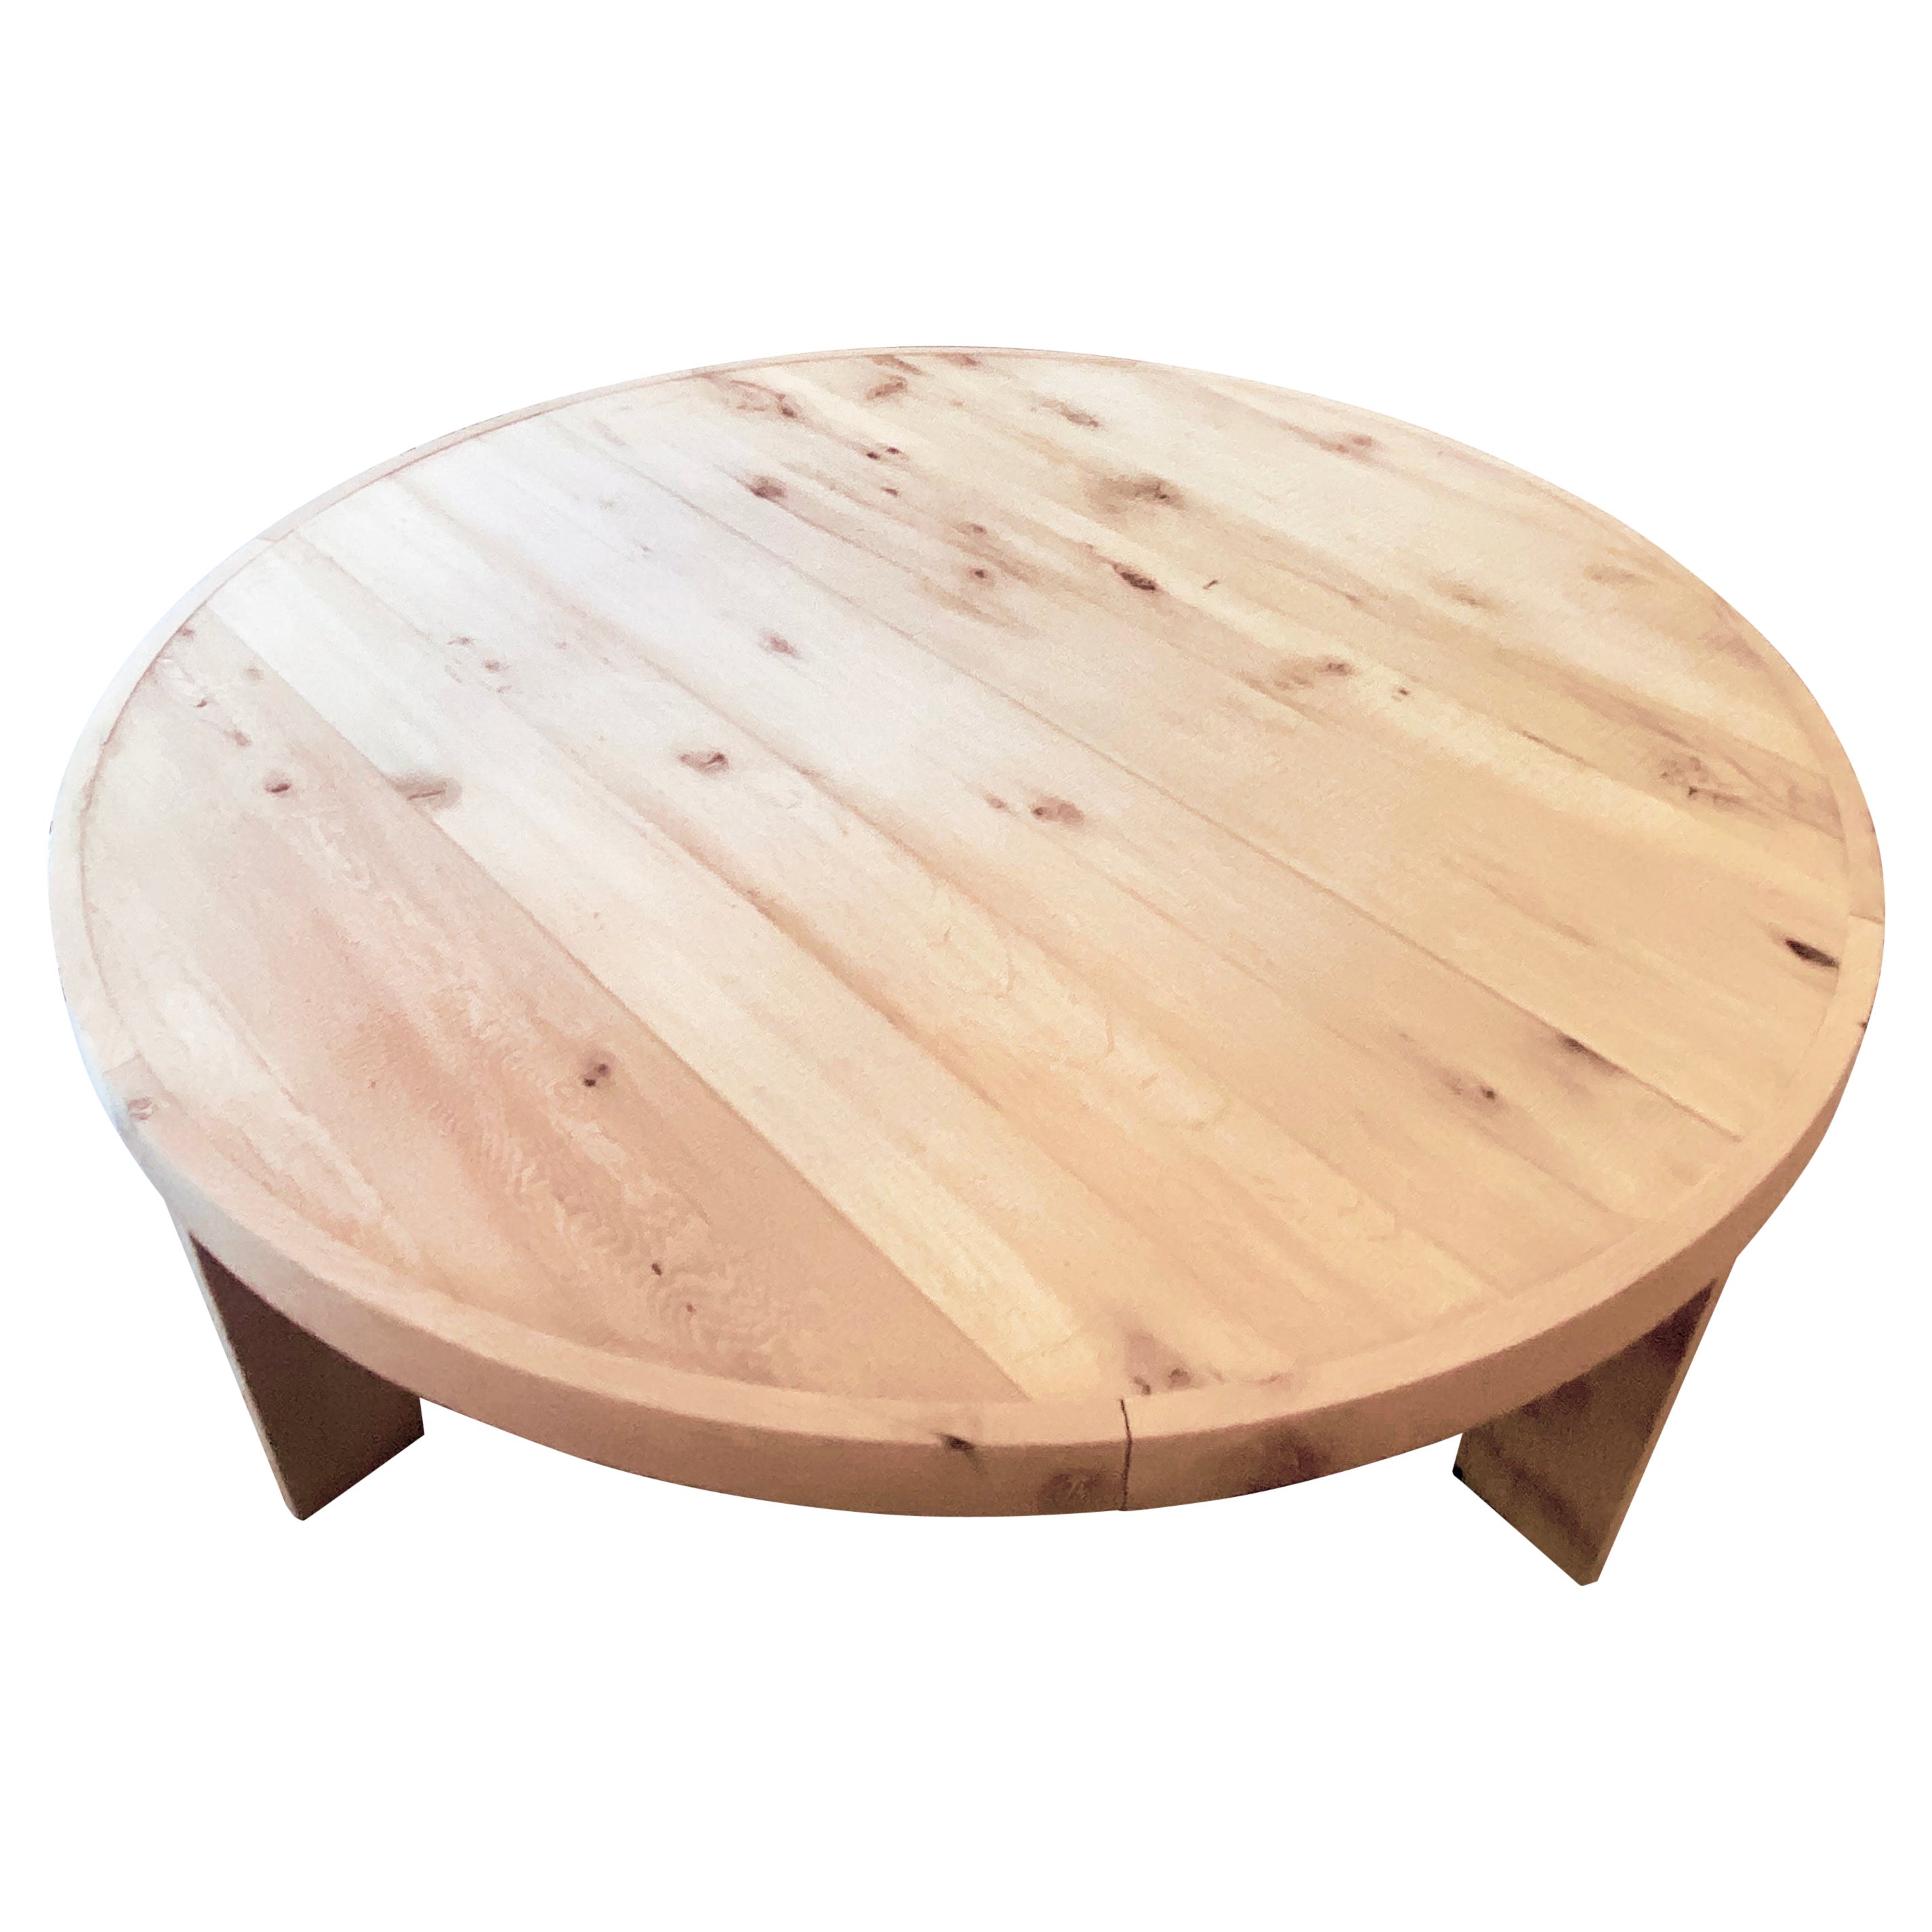  Modern White Oak Handmade Center Table by Fortunata Design